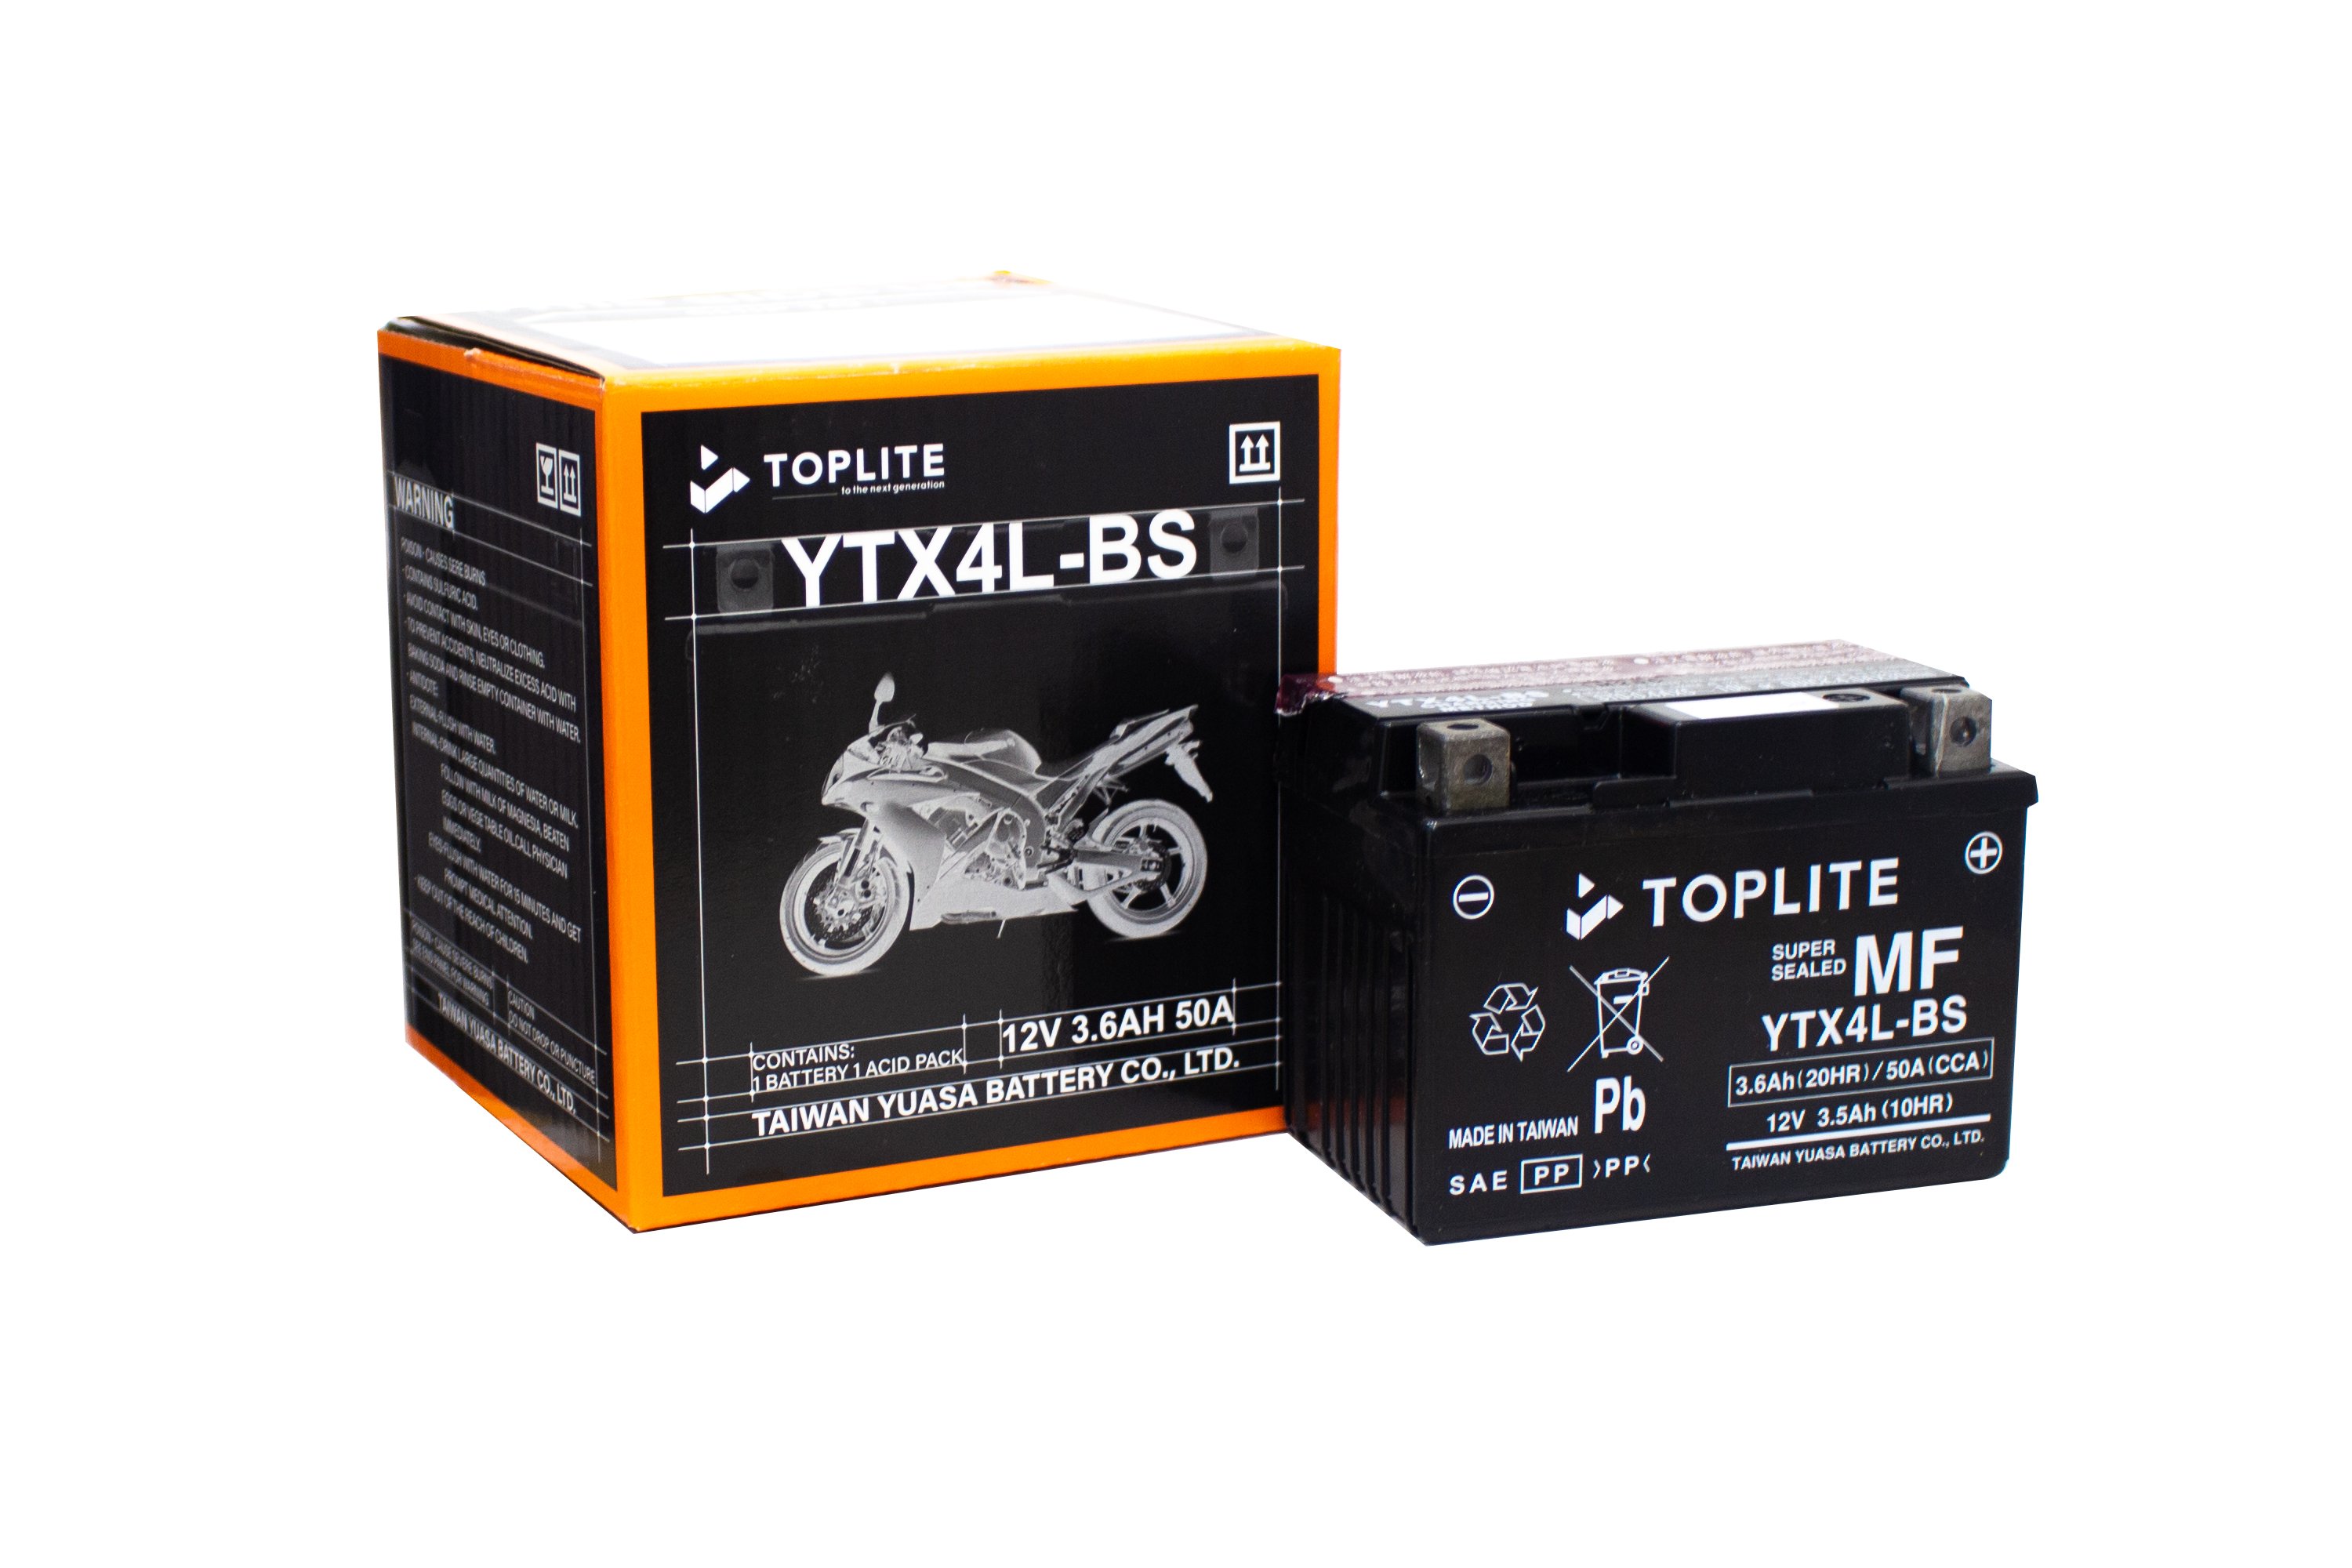 Bình ắc quy Toplite YTX4L-BS 12V-3.5Ah cho xe Honda Vision